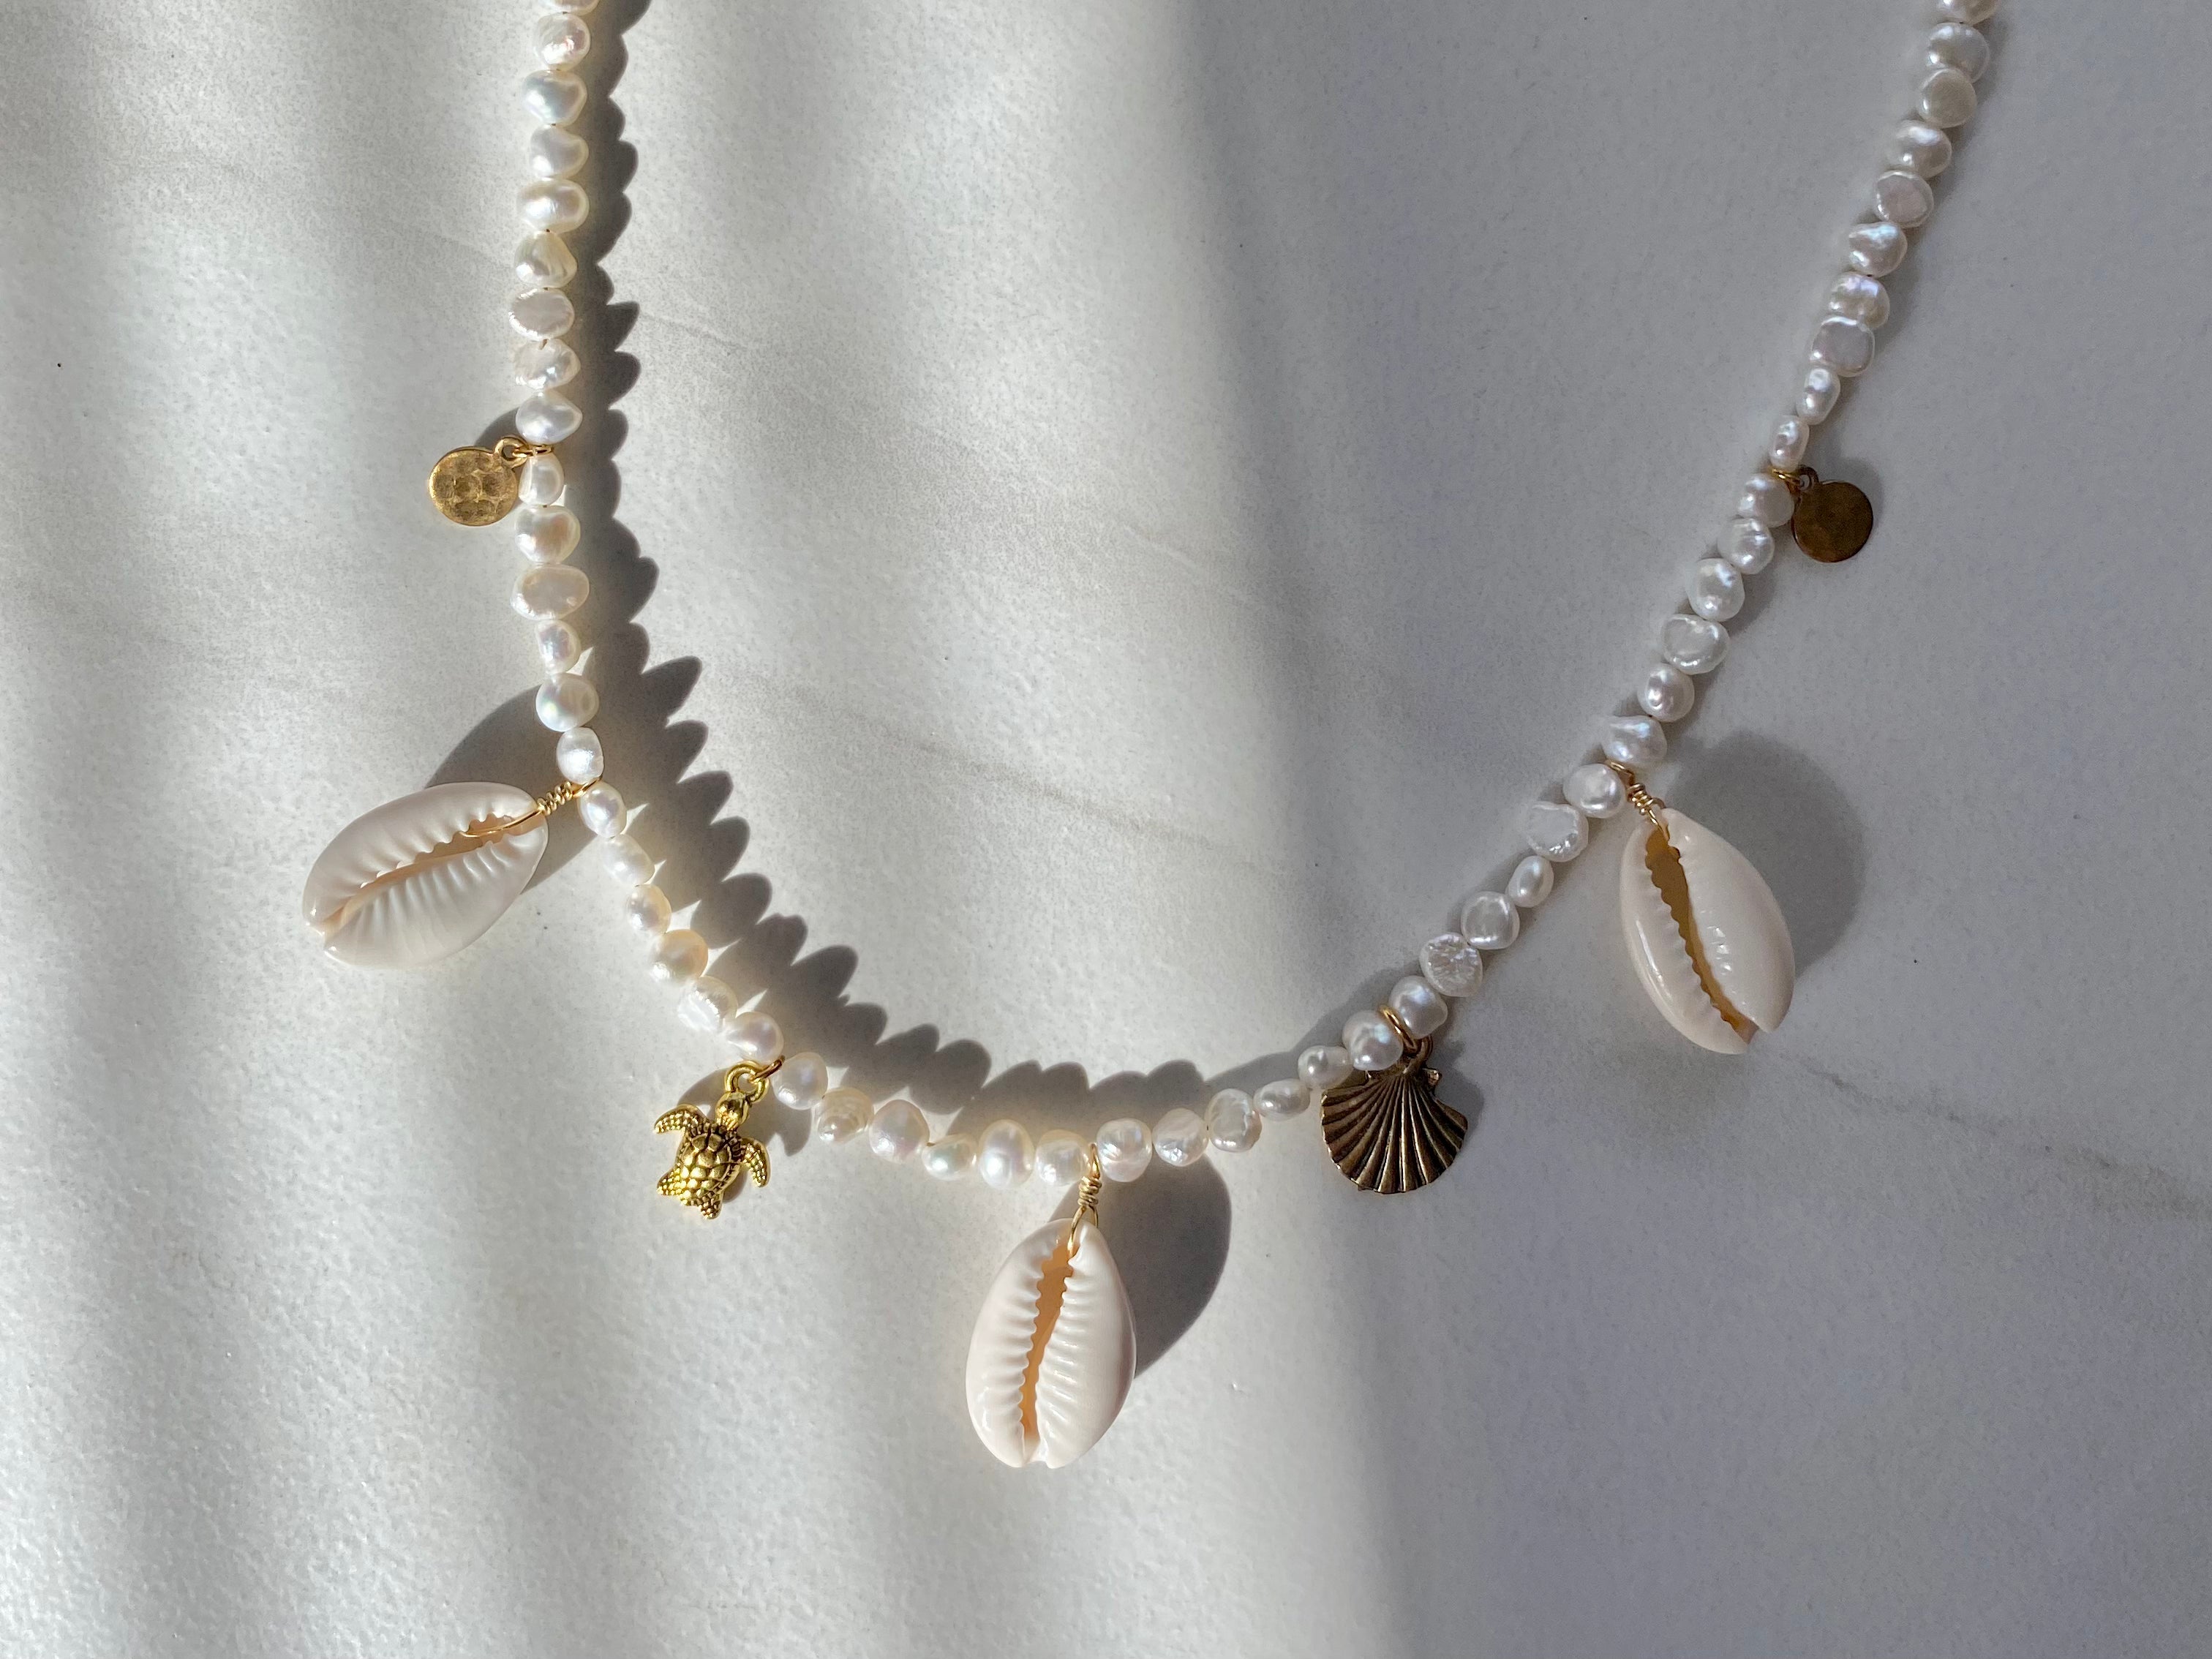 Mermaid Treasures Necklace